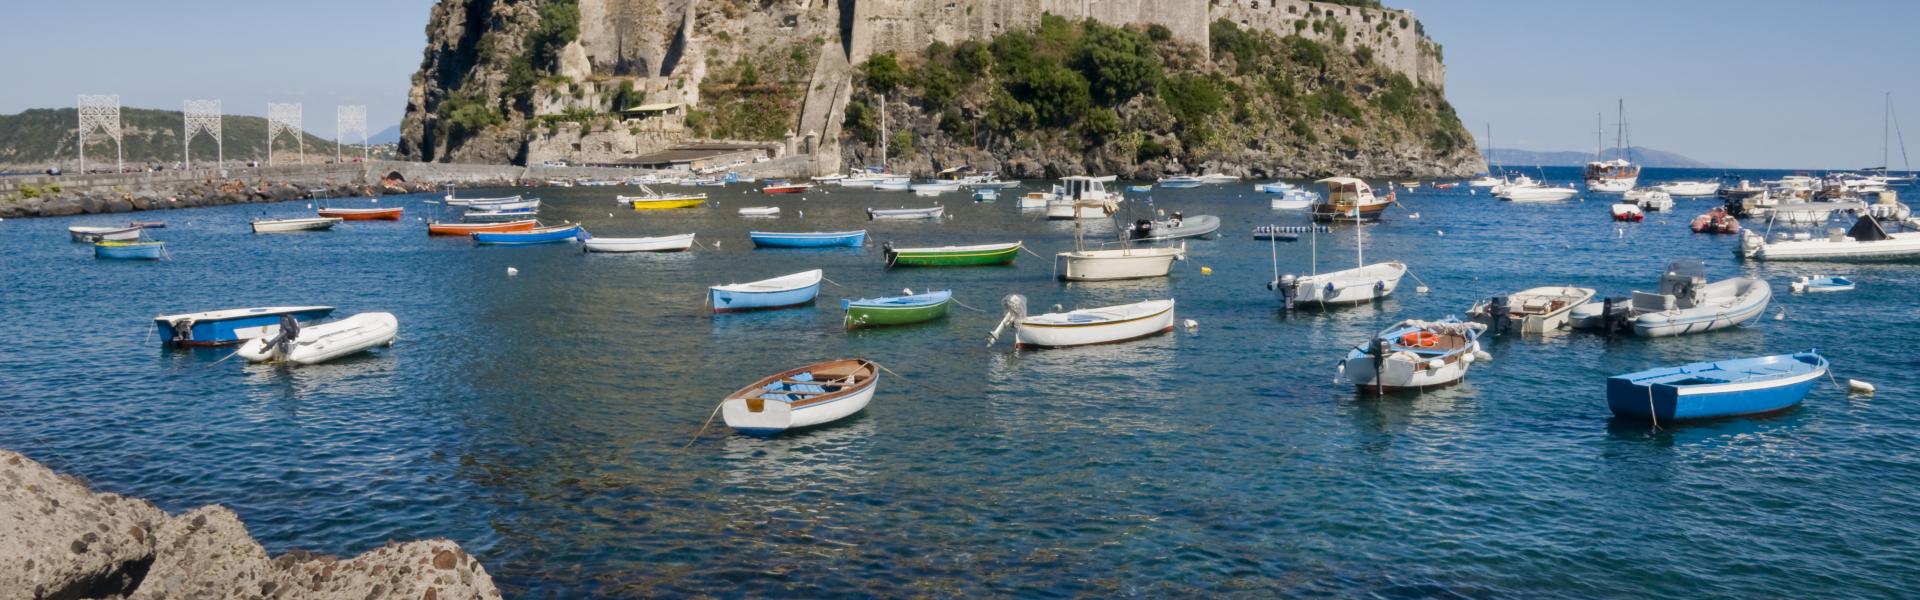 Locations de vacances et appartements sur l'île Ischia - HomeToGo